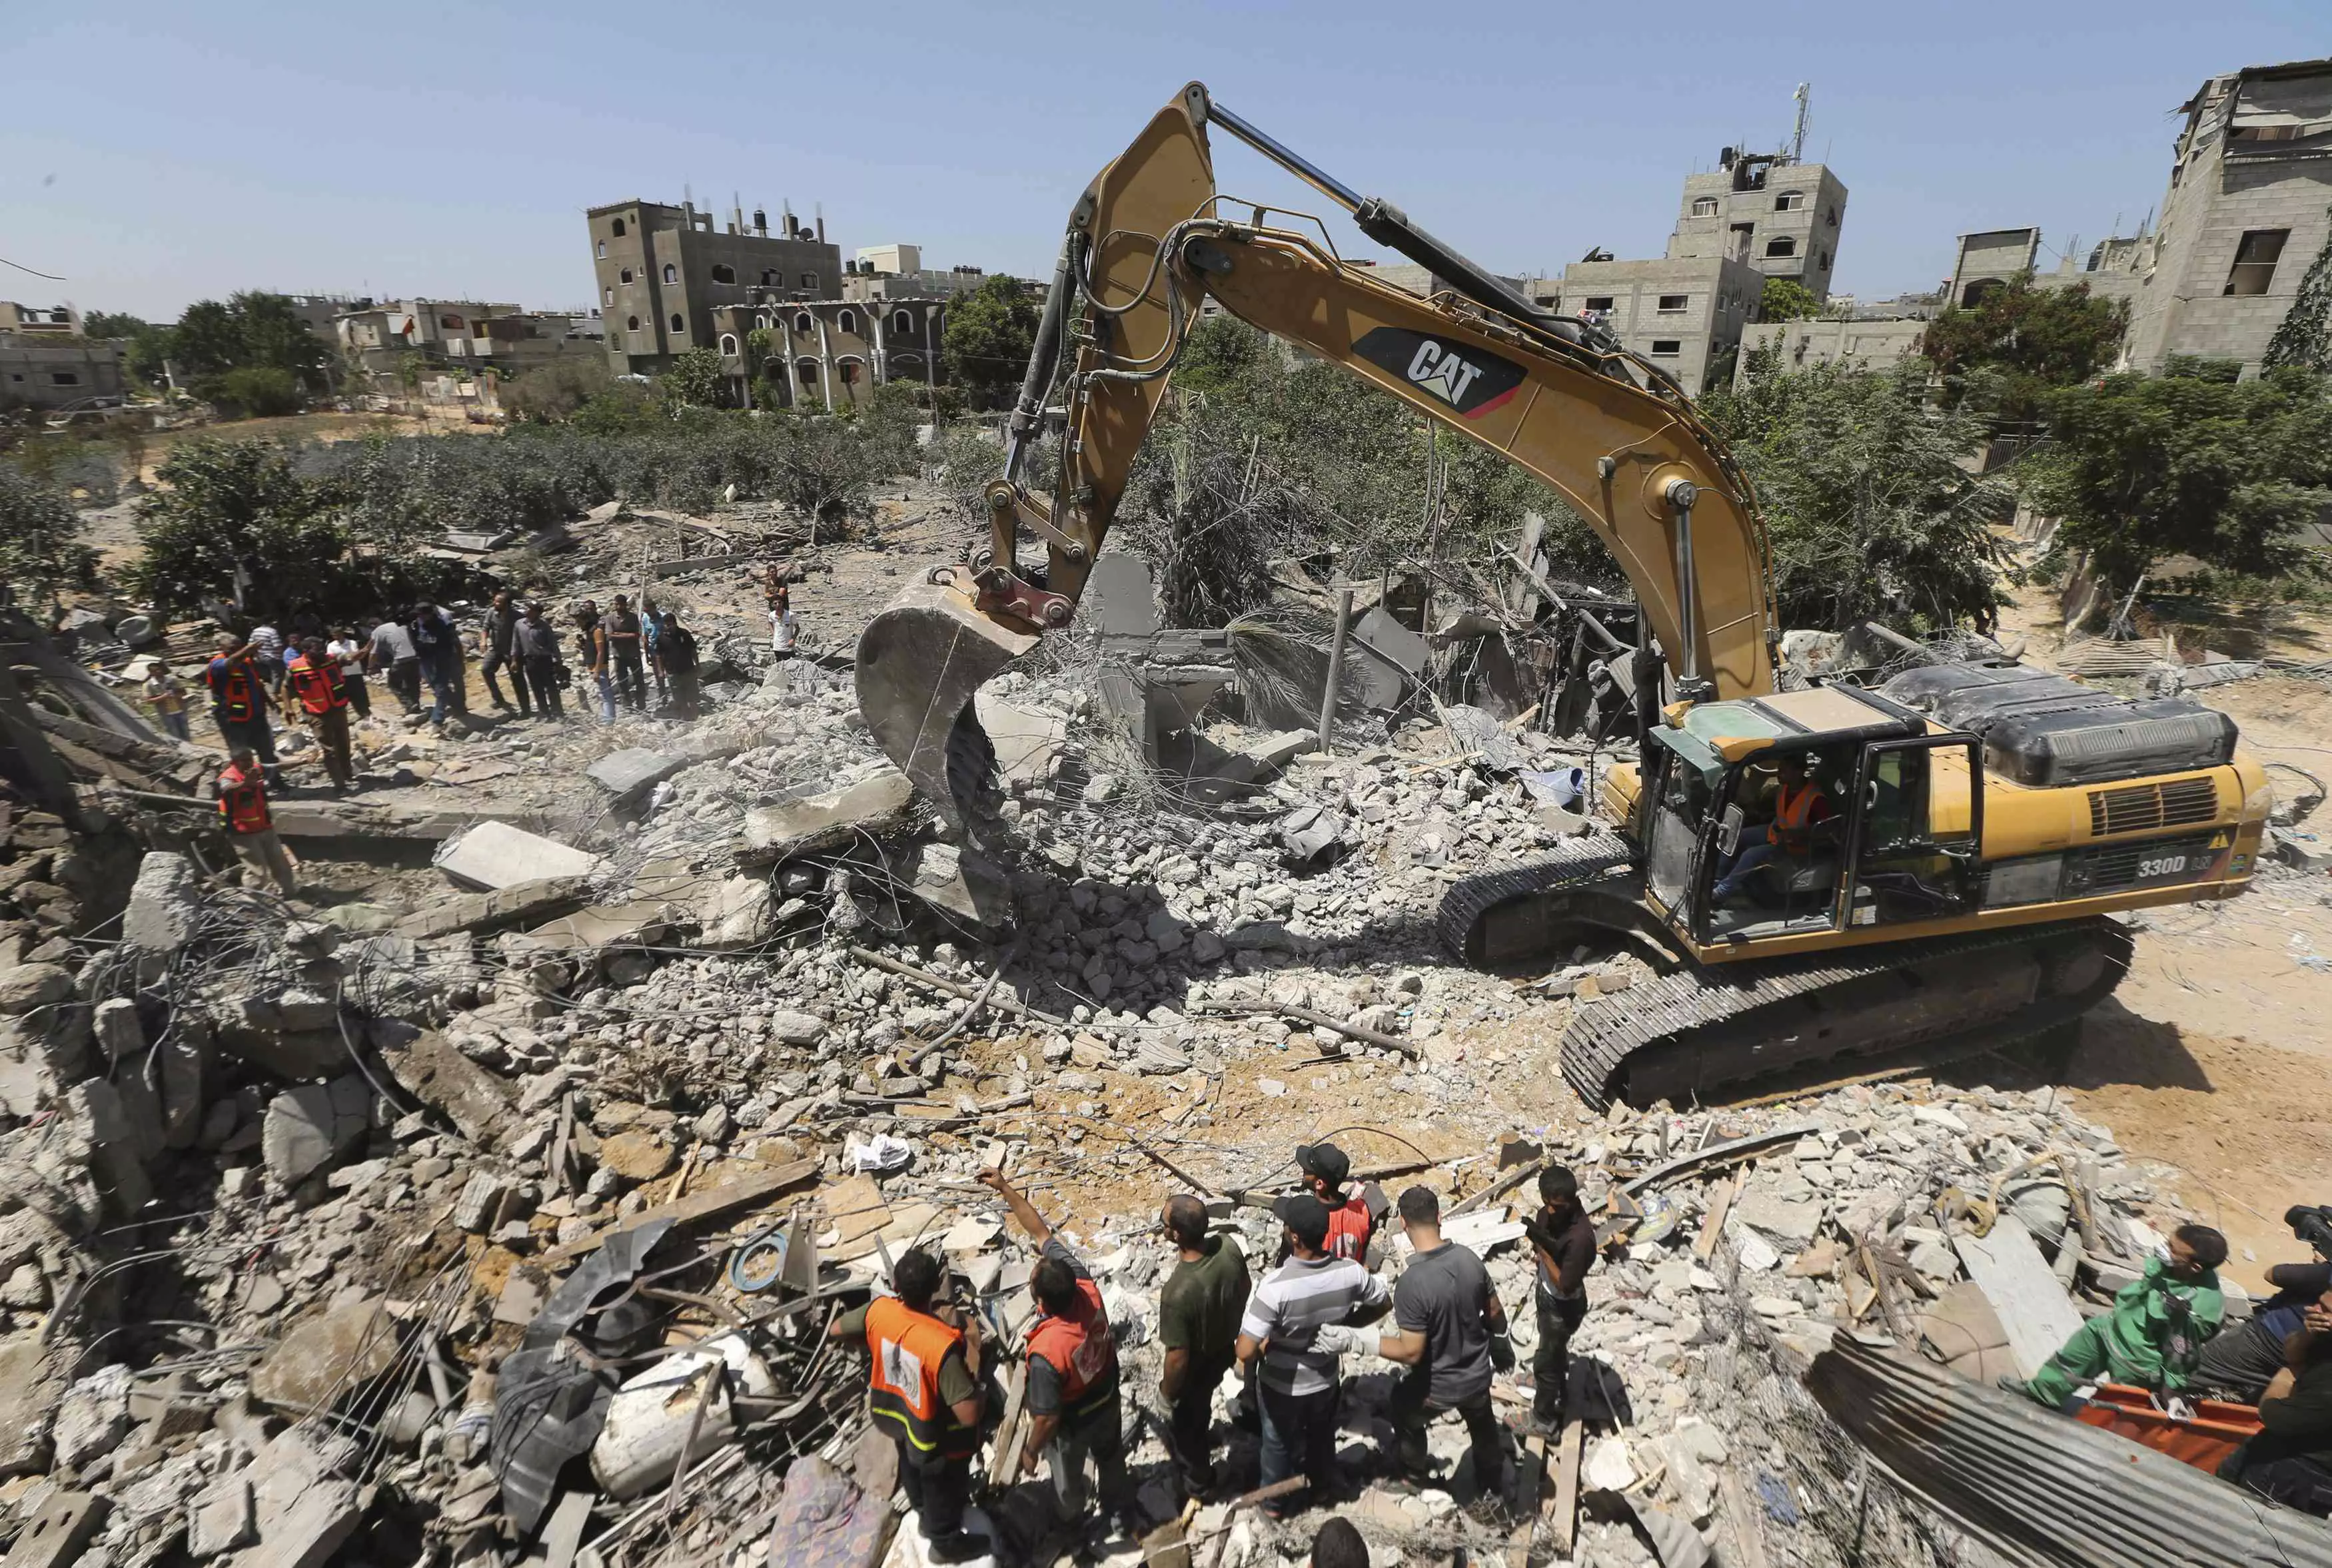 ישראל מאפשרת הכנסת סיוע. הריסות ברצועת עזה לאחר הפצצה של צה"ל במהלך "צוק איתן"